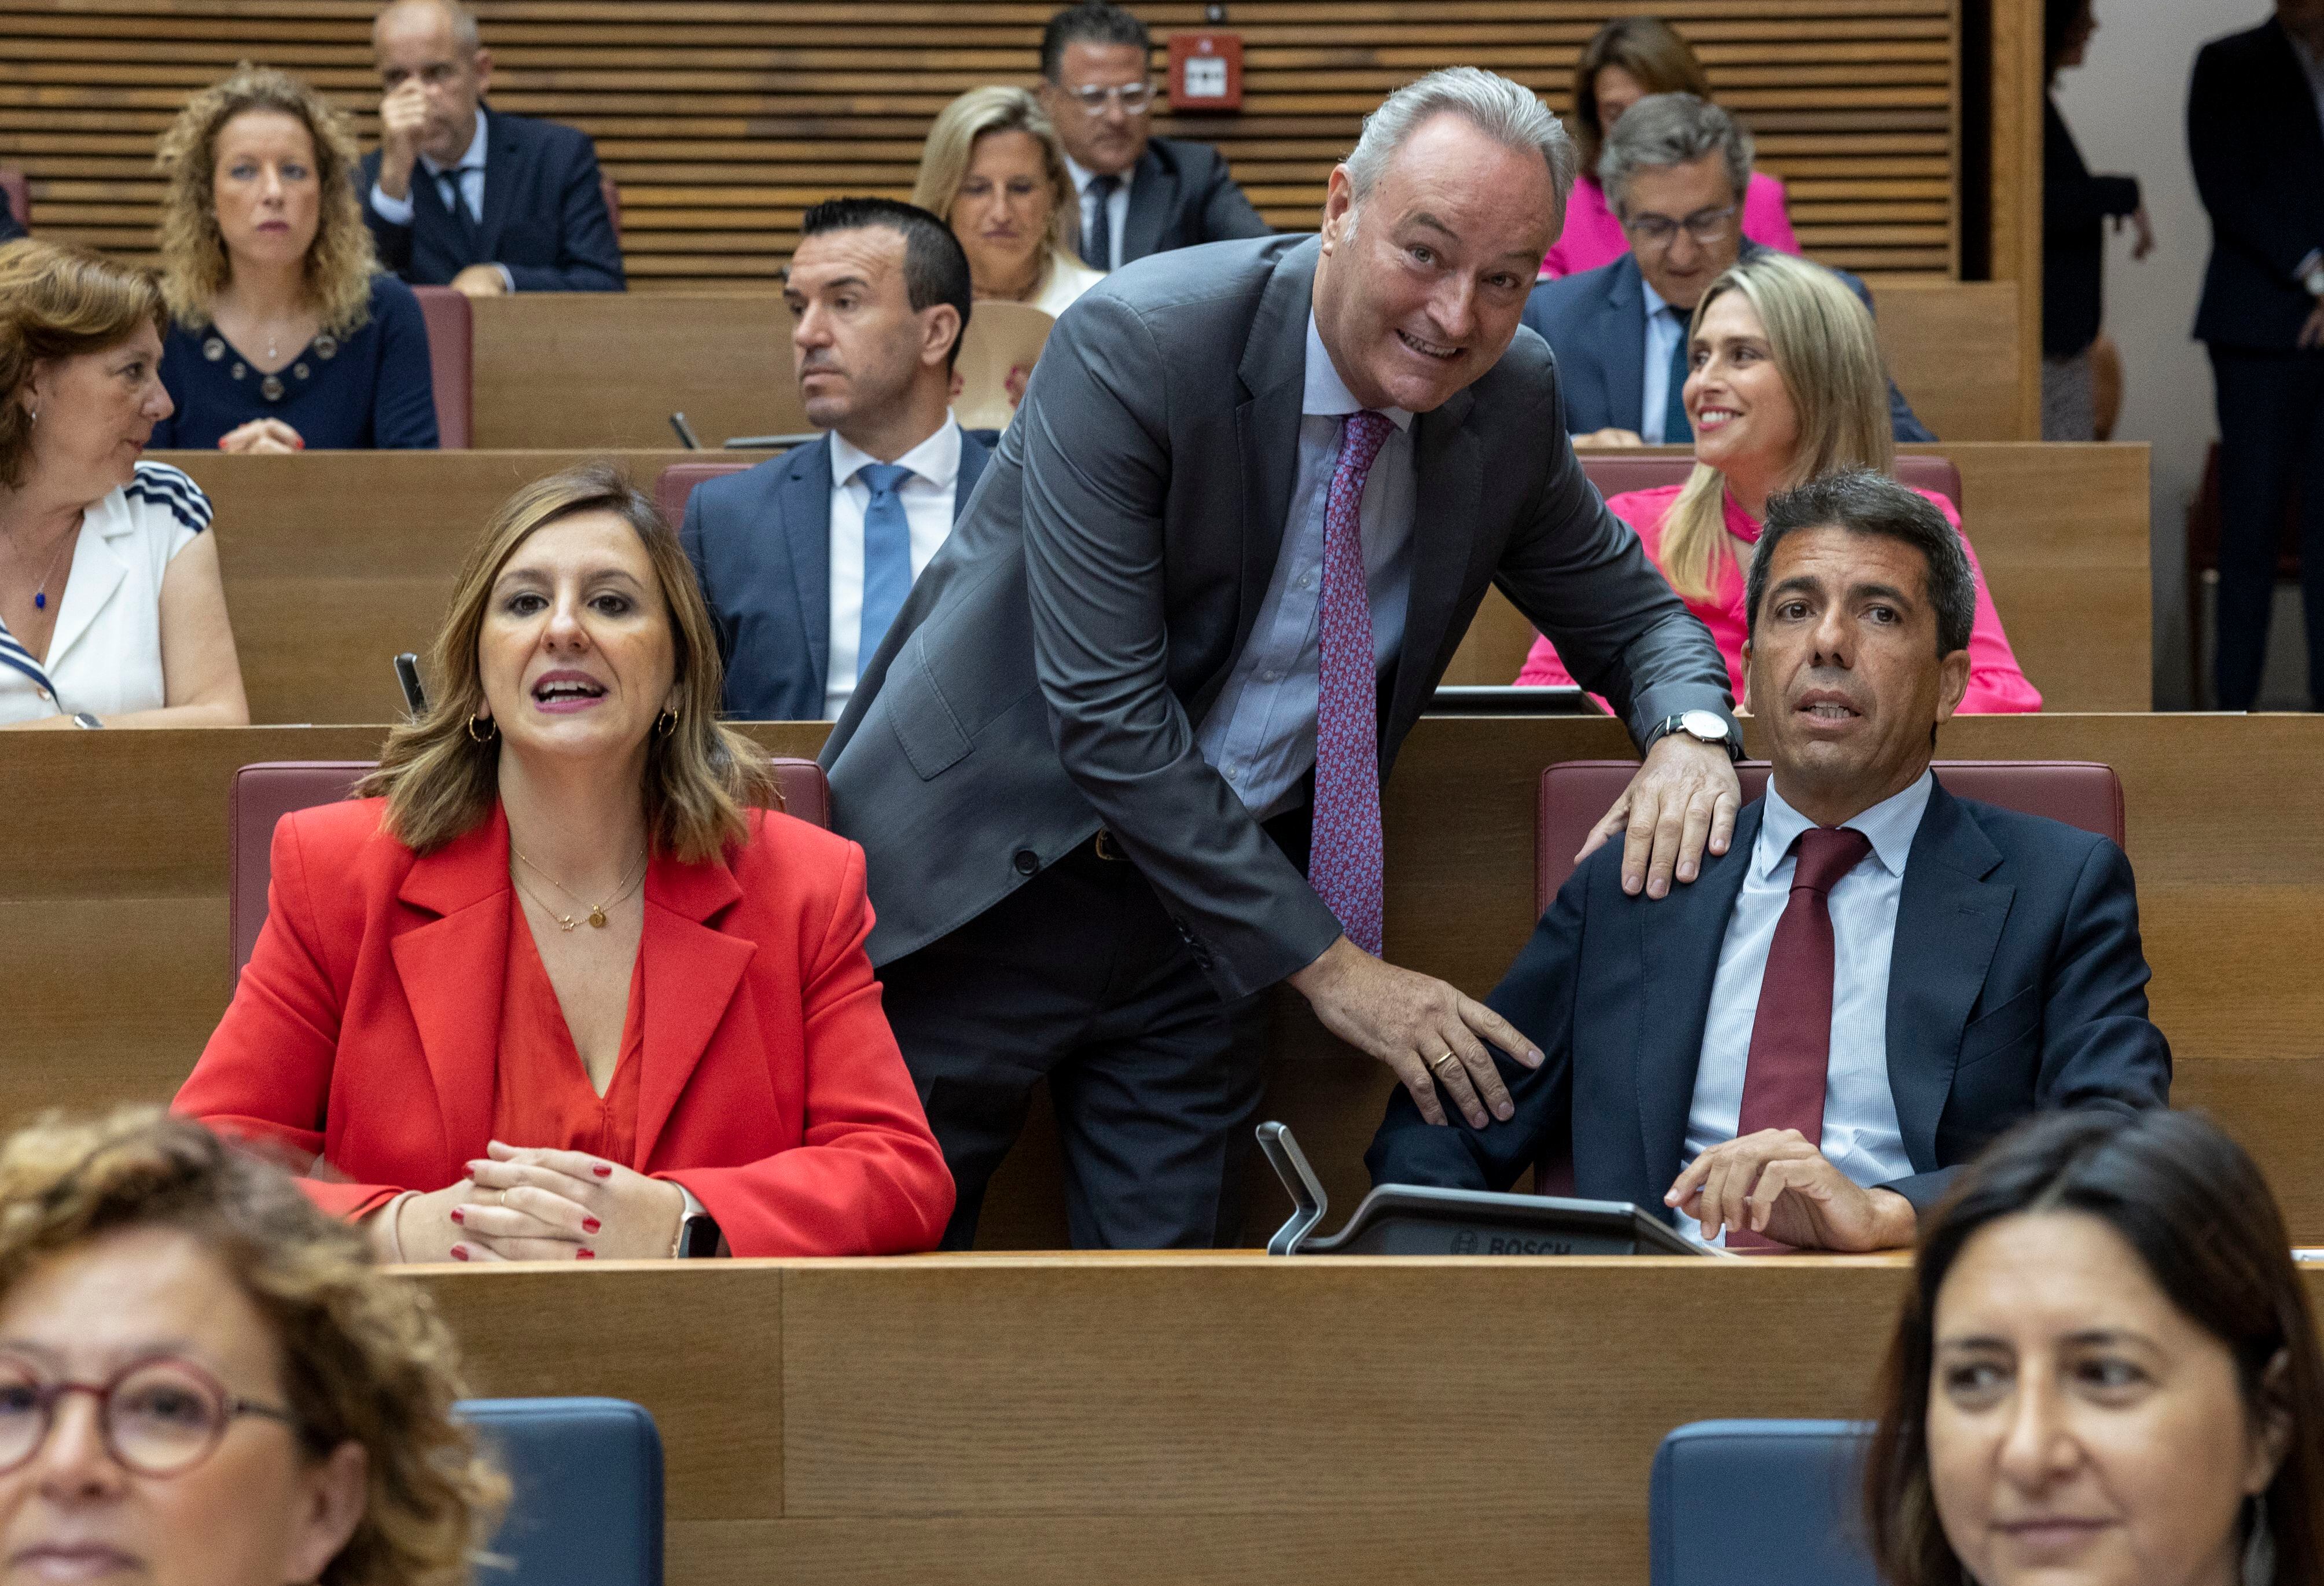 El futuro president de la Generalitat, Carlos Mazón (centro) saluda al expresidente Alberto Fabra en presencia de la alcaldesa de valencia, María José Catalá.